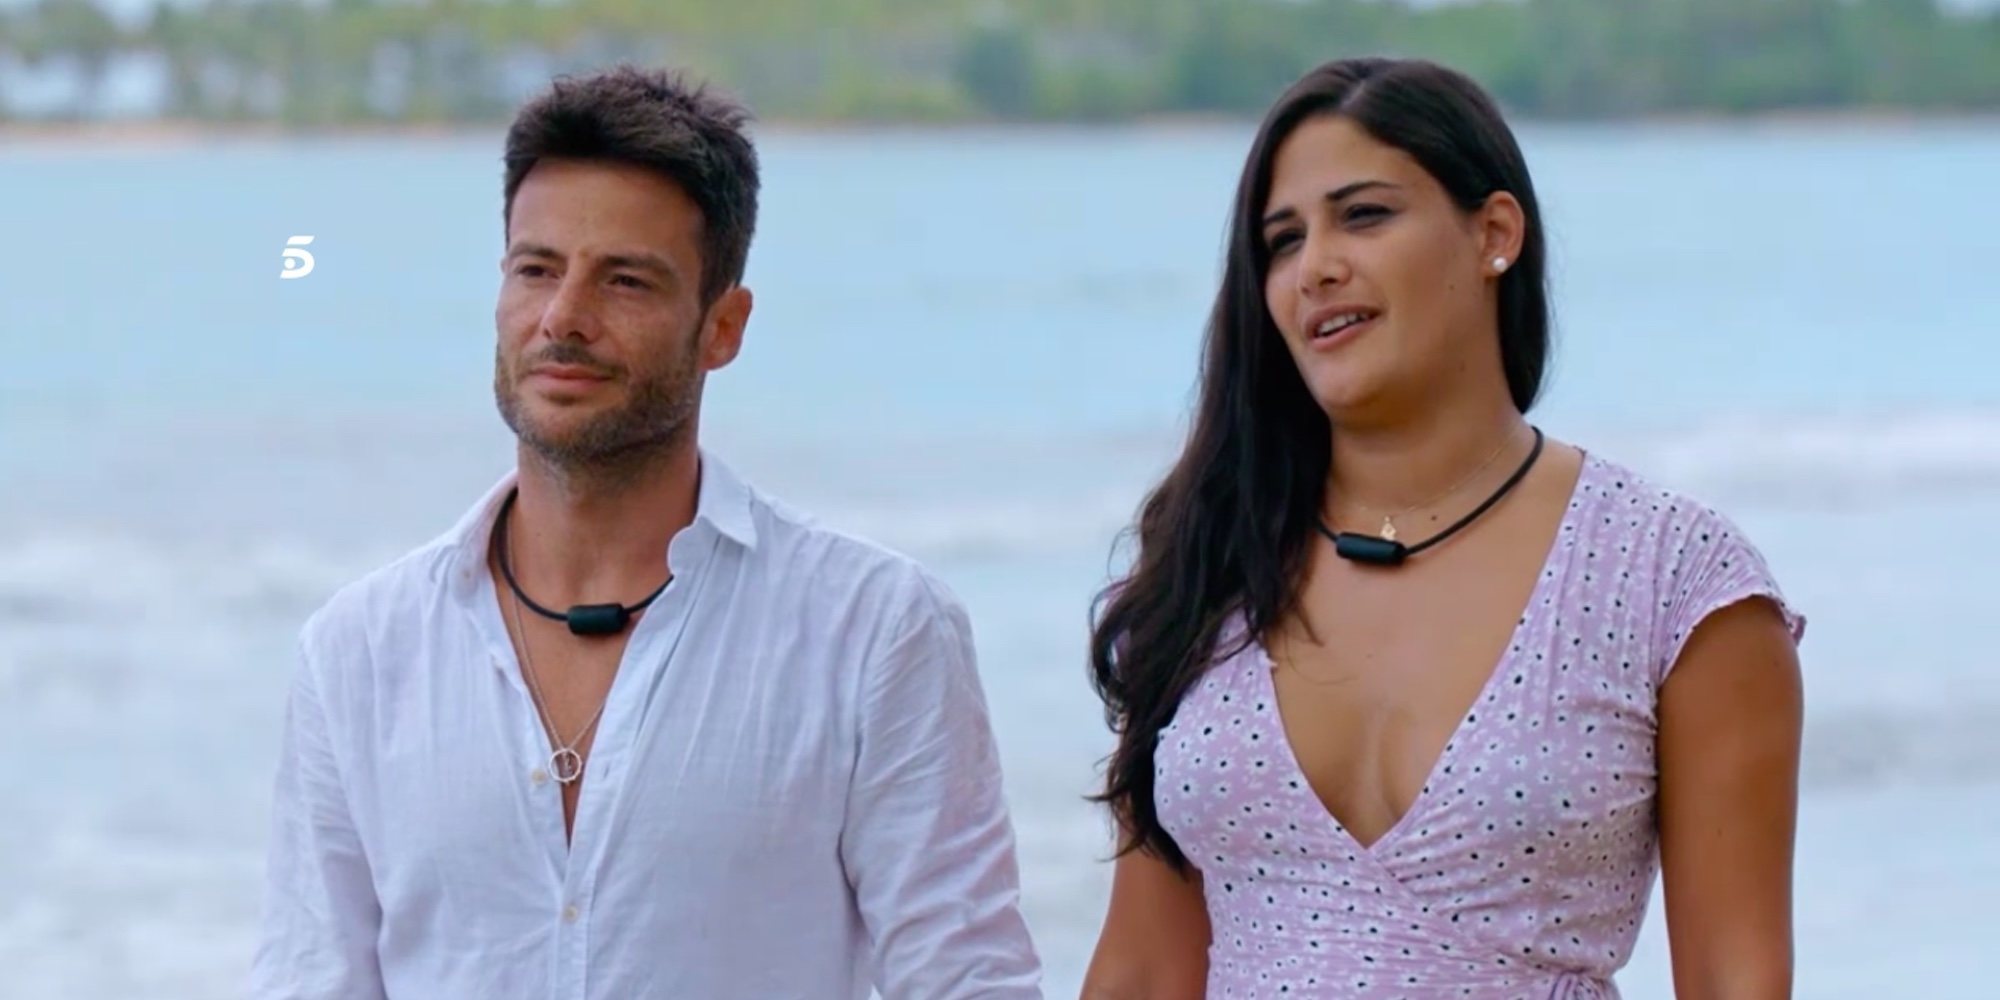 Alessandro Livi y Patricia, nueva pareja de 'La isla de las tentaciones 2': "Aless perdonó una infidelidad"